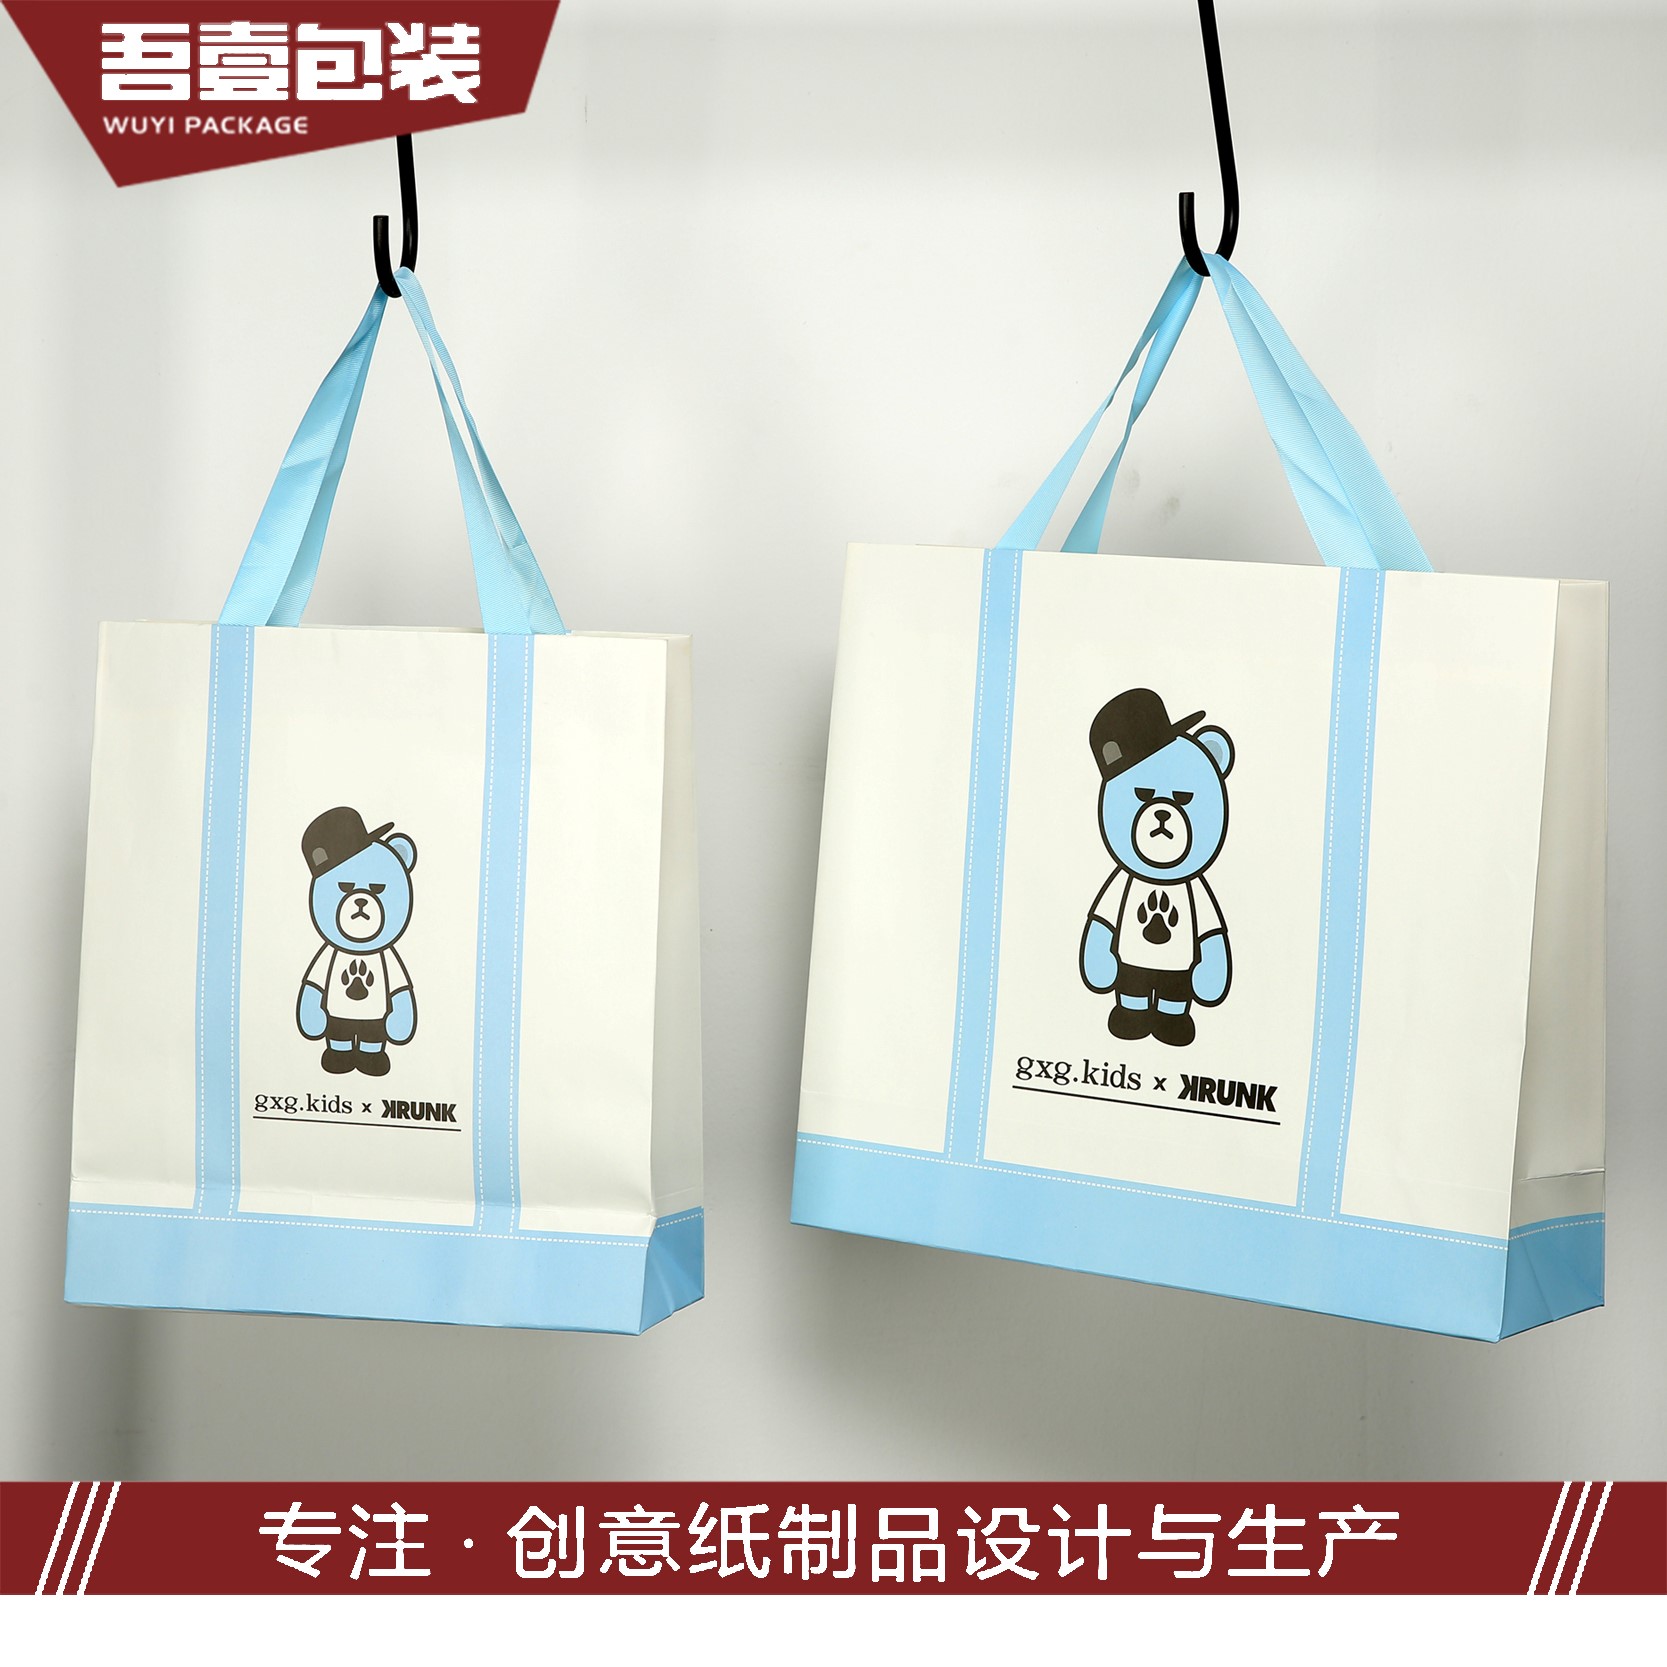 苏州吾壹包装彩印有限公司将亮相CIPPME上海包装展